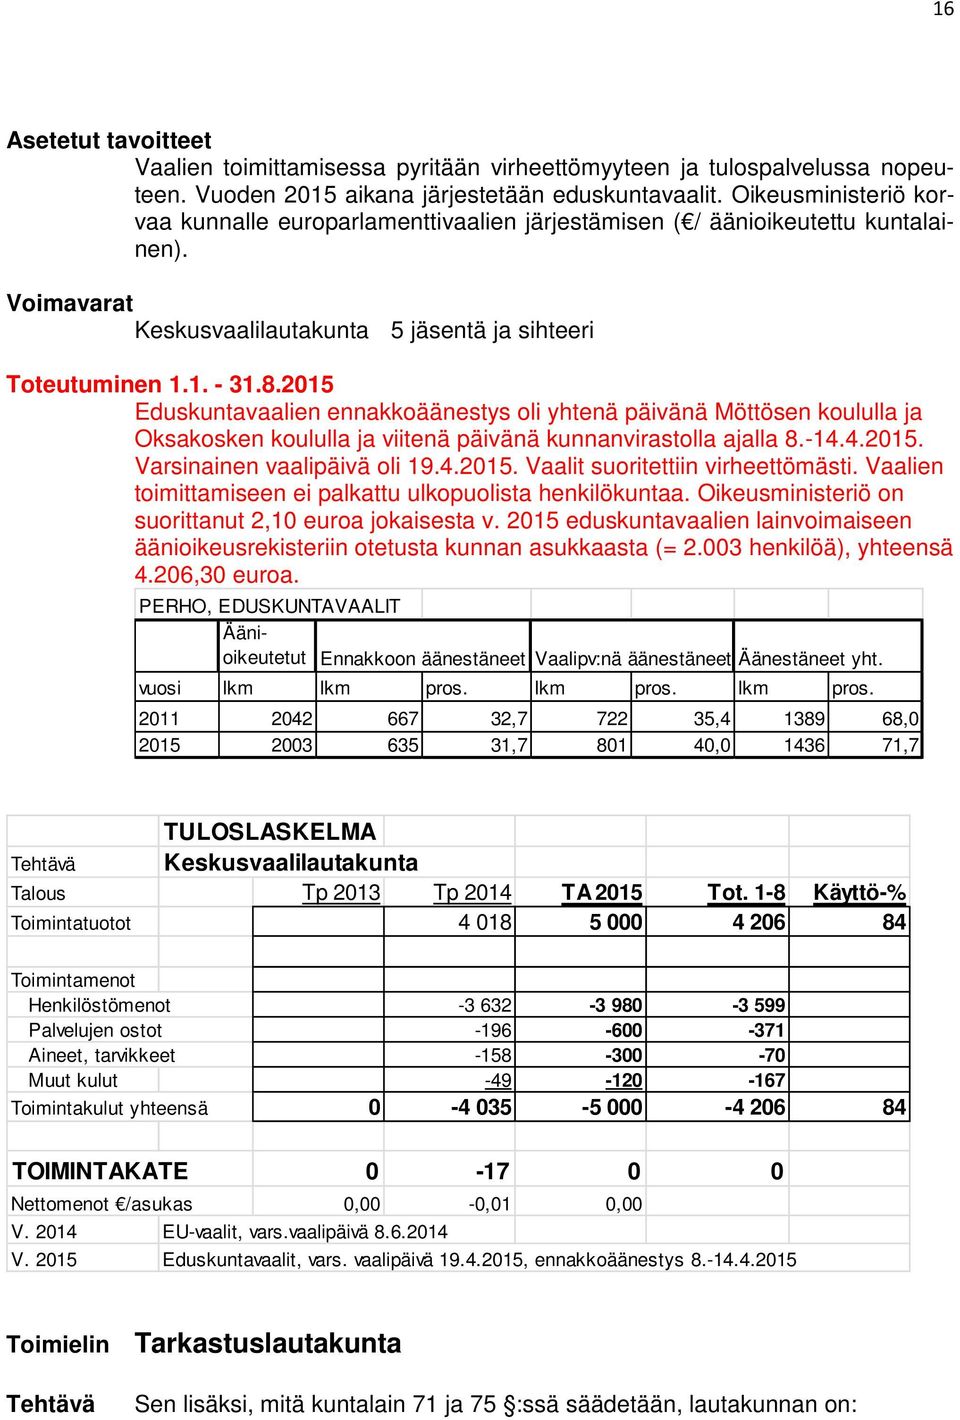 2015 Eduskuntavaalien ennakkoäänestys oli yhtenä päivänä Möttösen koululla ja Oksakosken koululla ja viitenä päivänä kunnanvirastolla ajalla 8.-14.4.2015. Varsinainen vaalipäivä oli 19.4.2015. Vaalit suoritettiin virheettömästi.